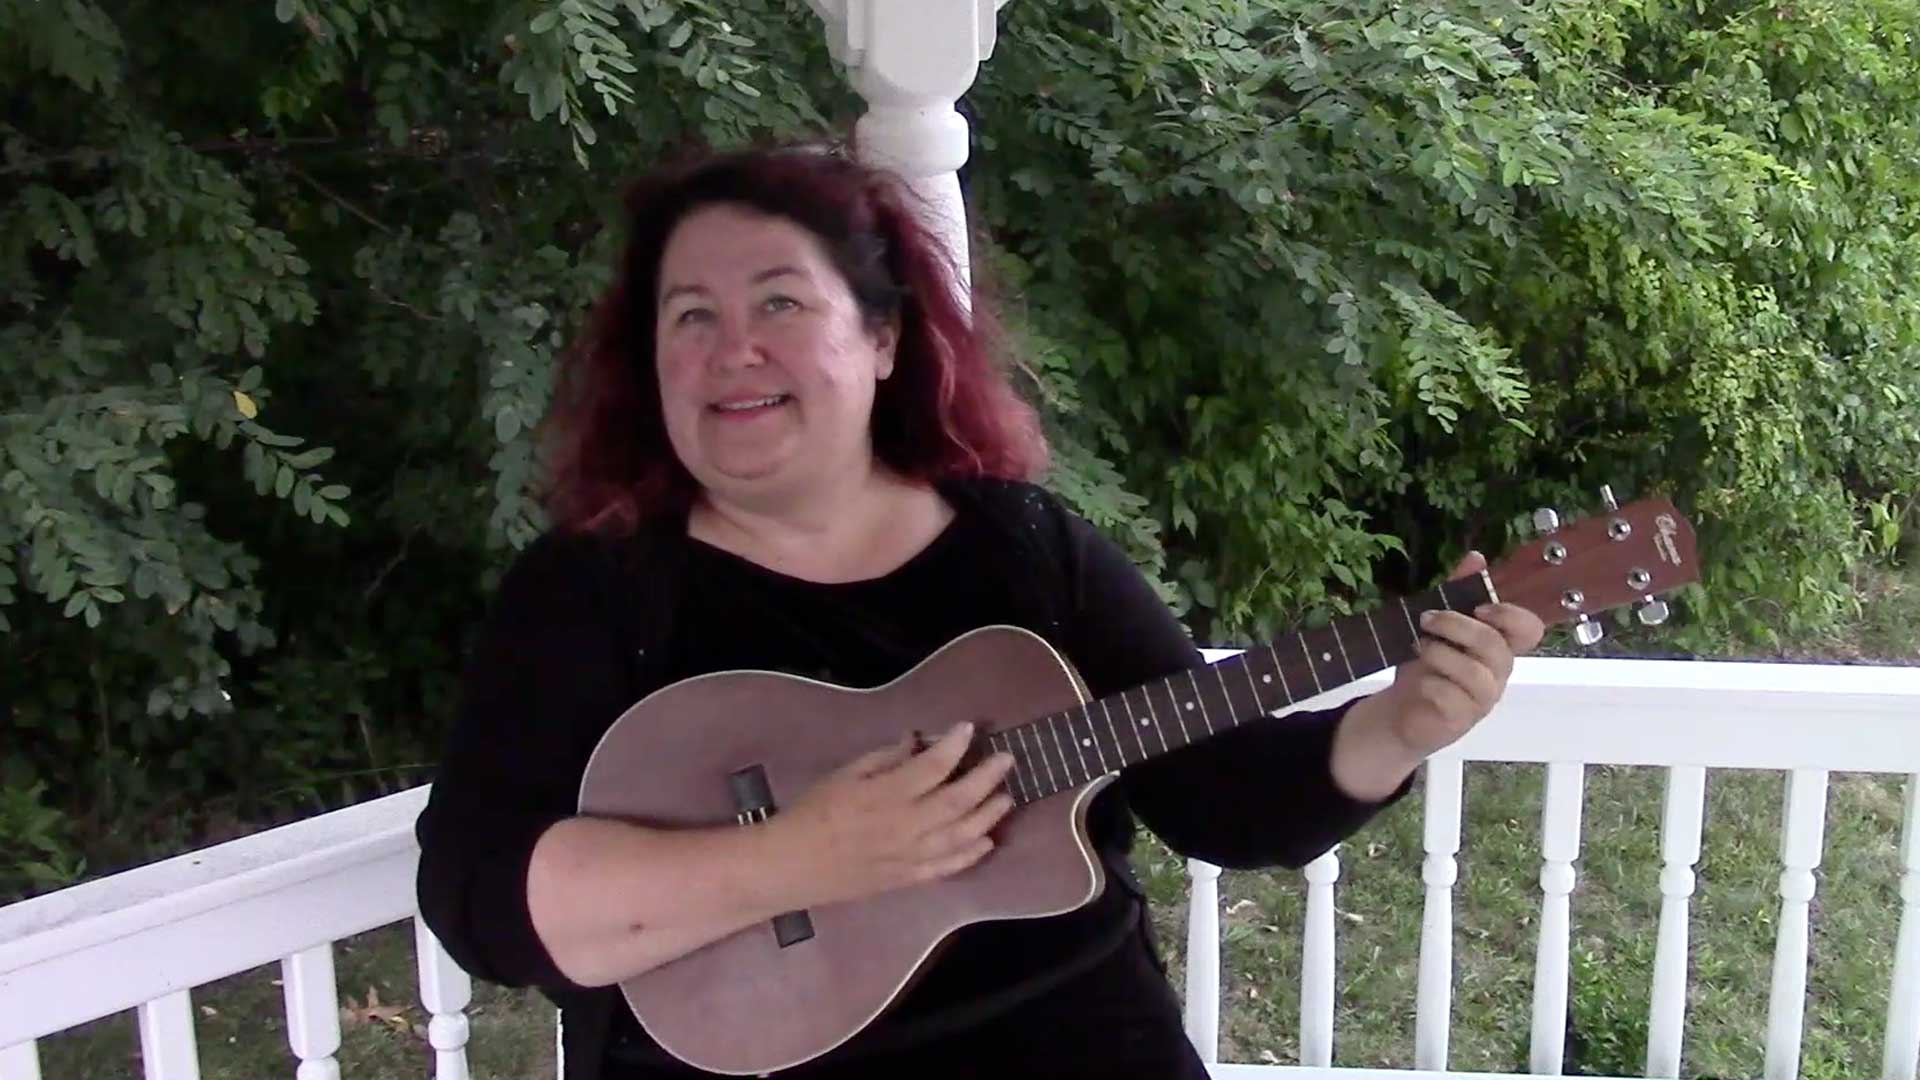 Melanie plays her ukulele